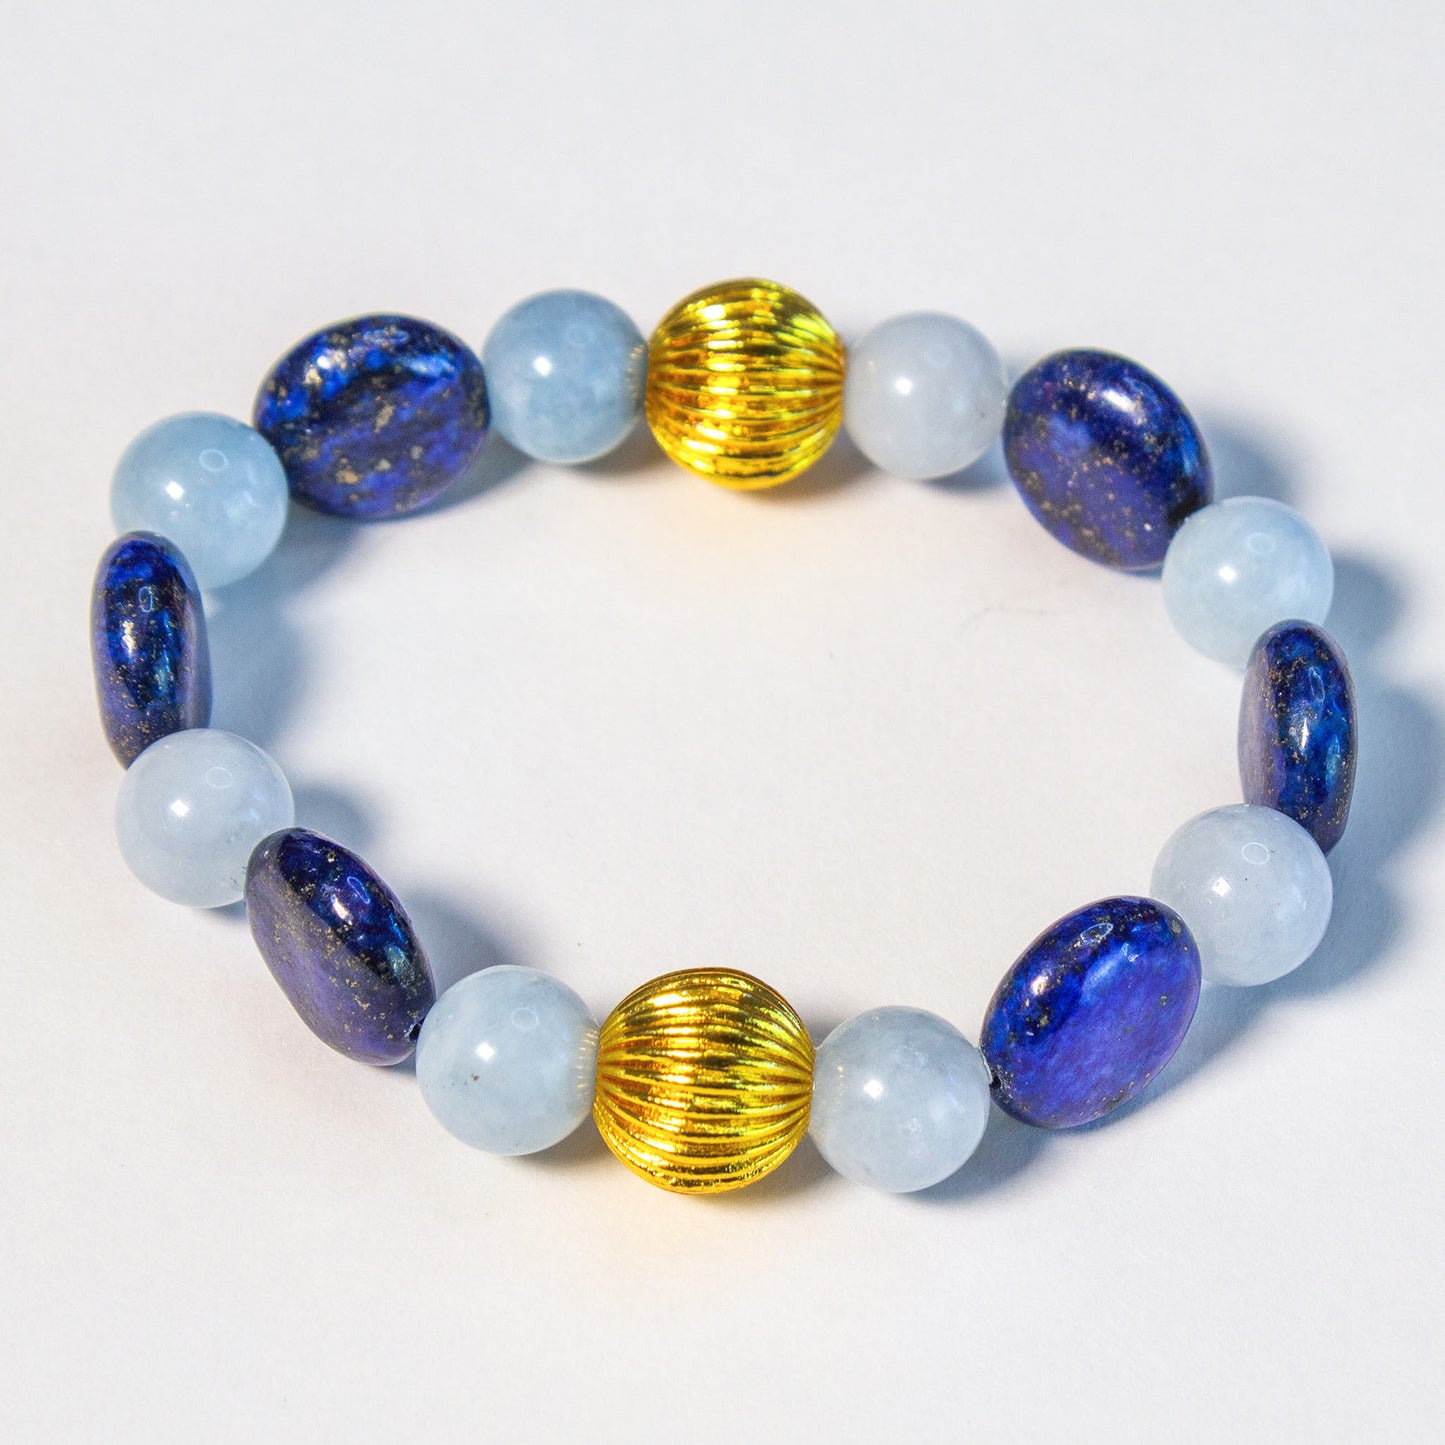 Coin-Shaped Lapis Lazuli and Aquamarine Gemstones Beaded Bracelet